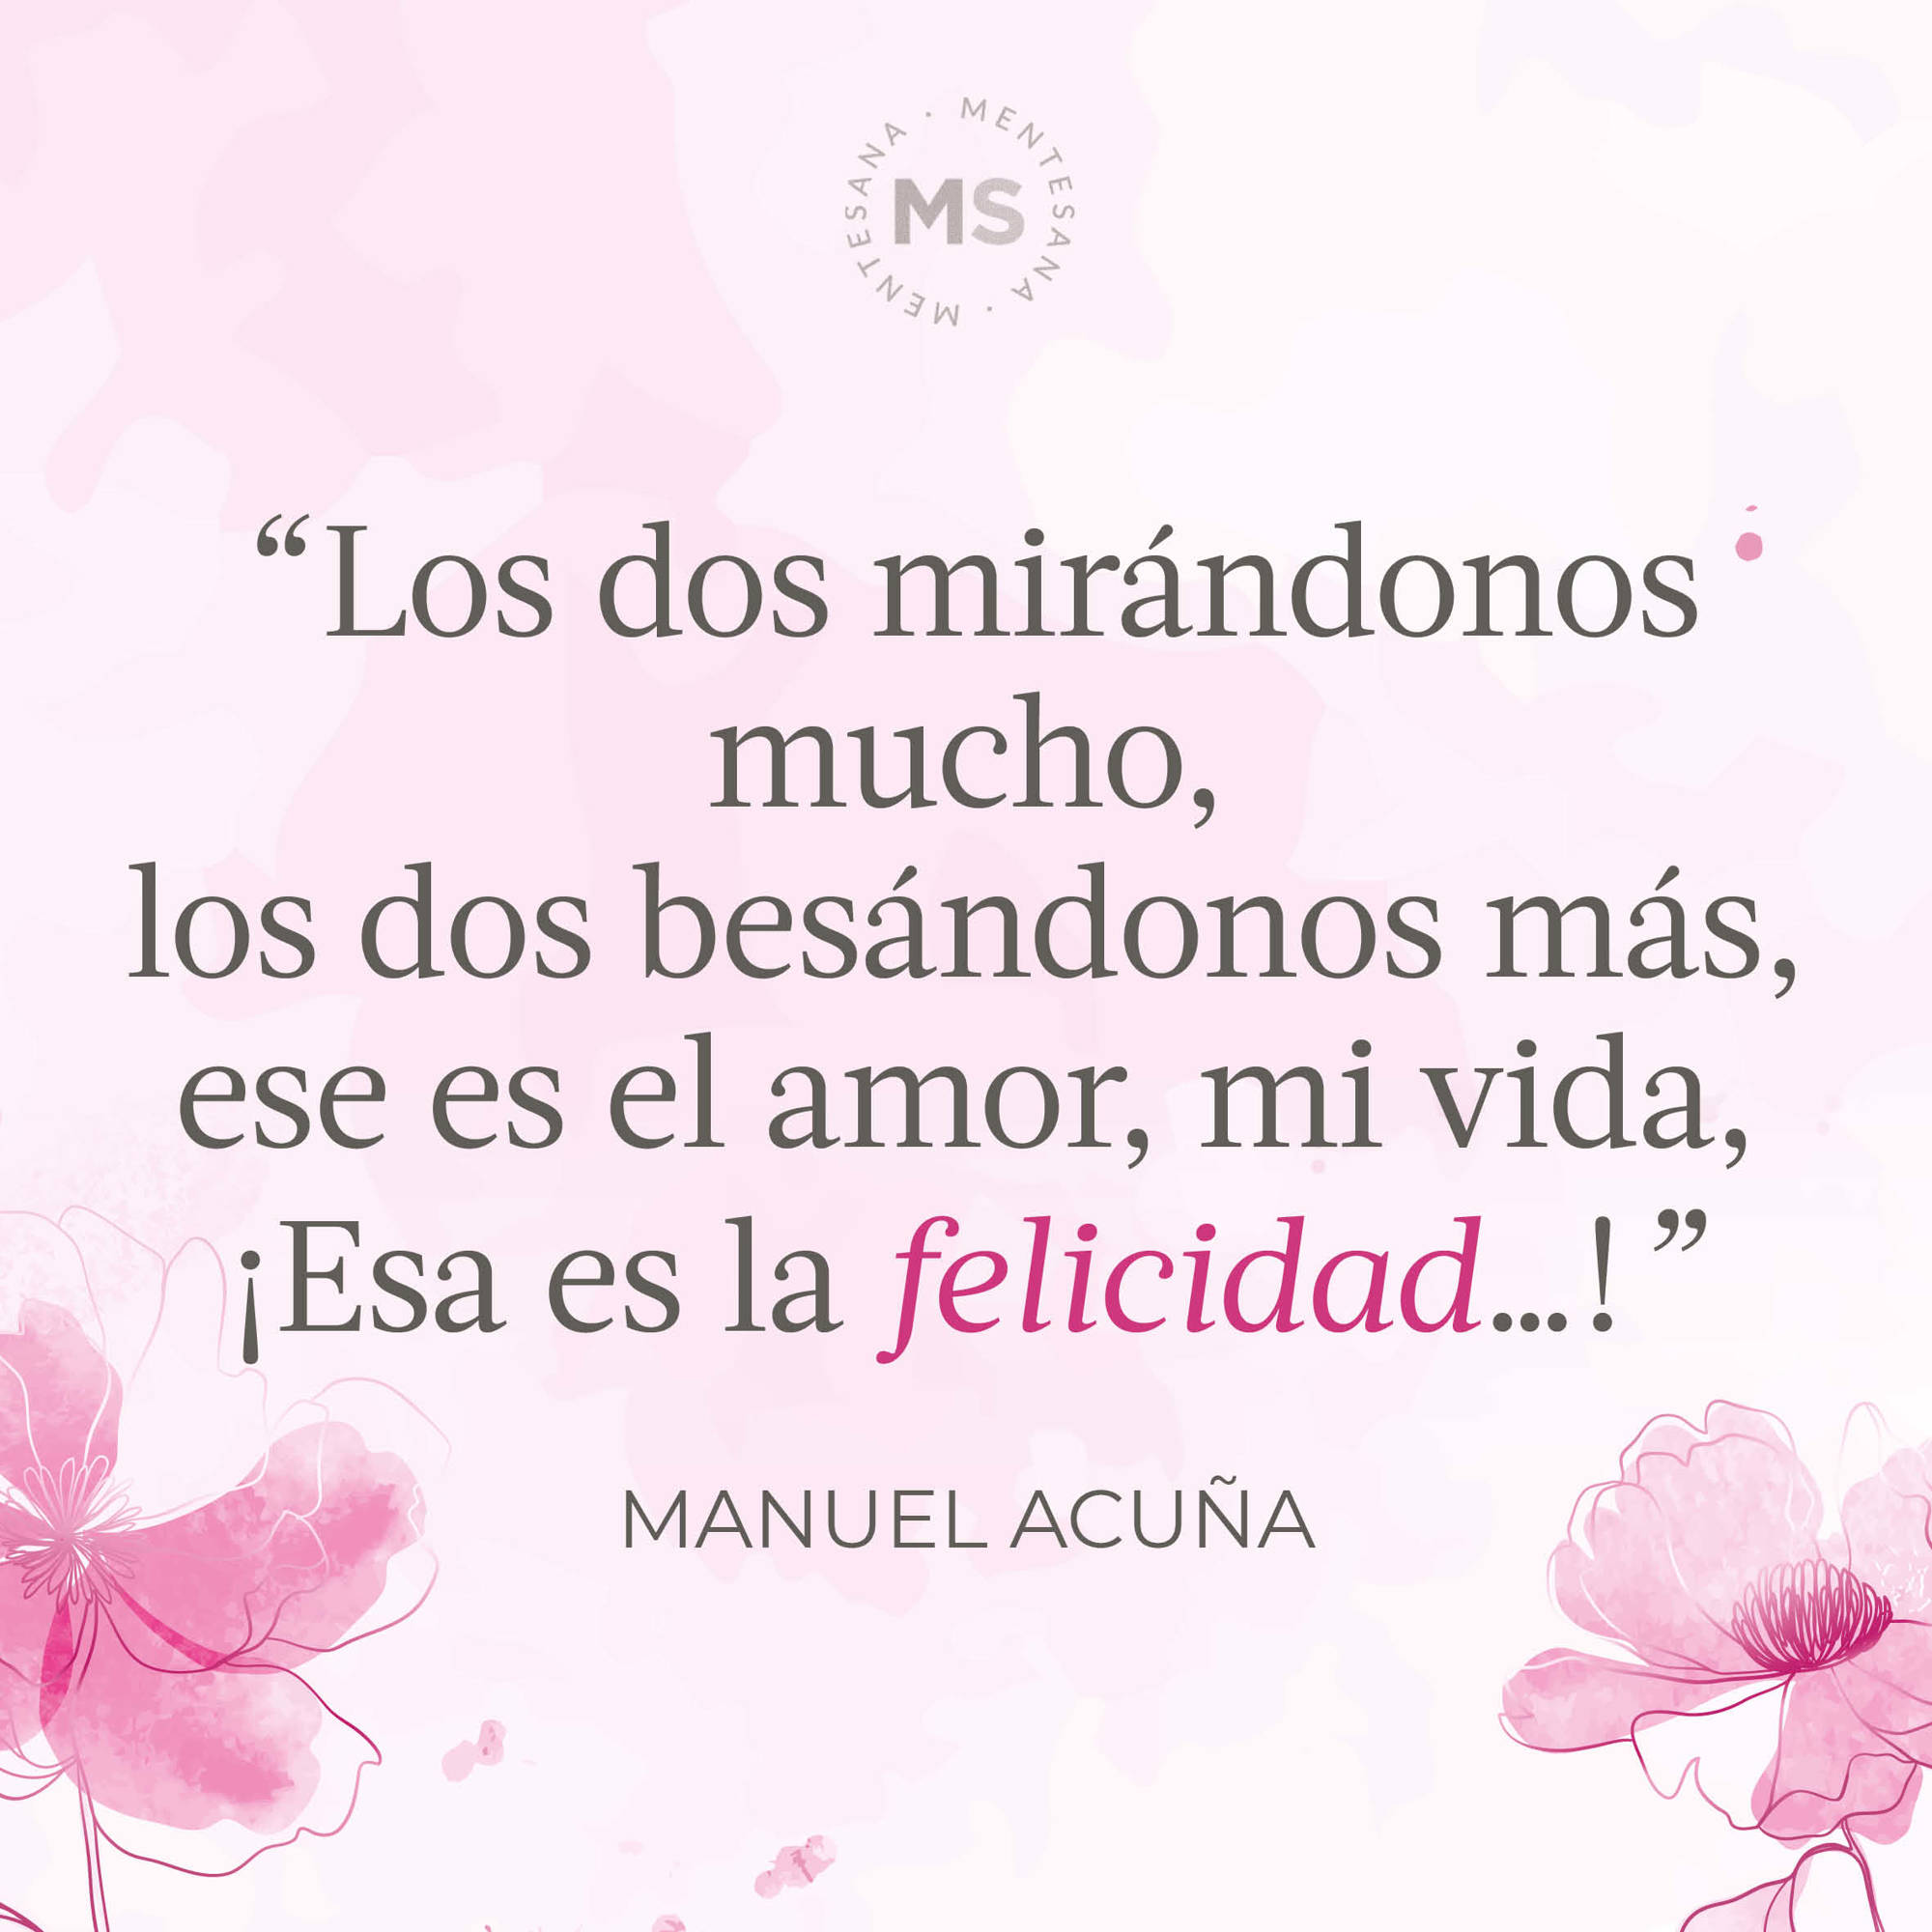 La felicidad (poema de Manuel Acuña)